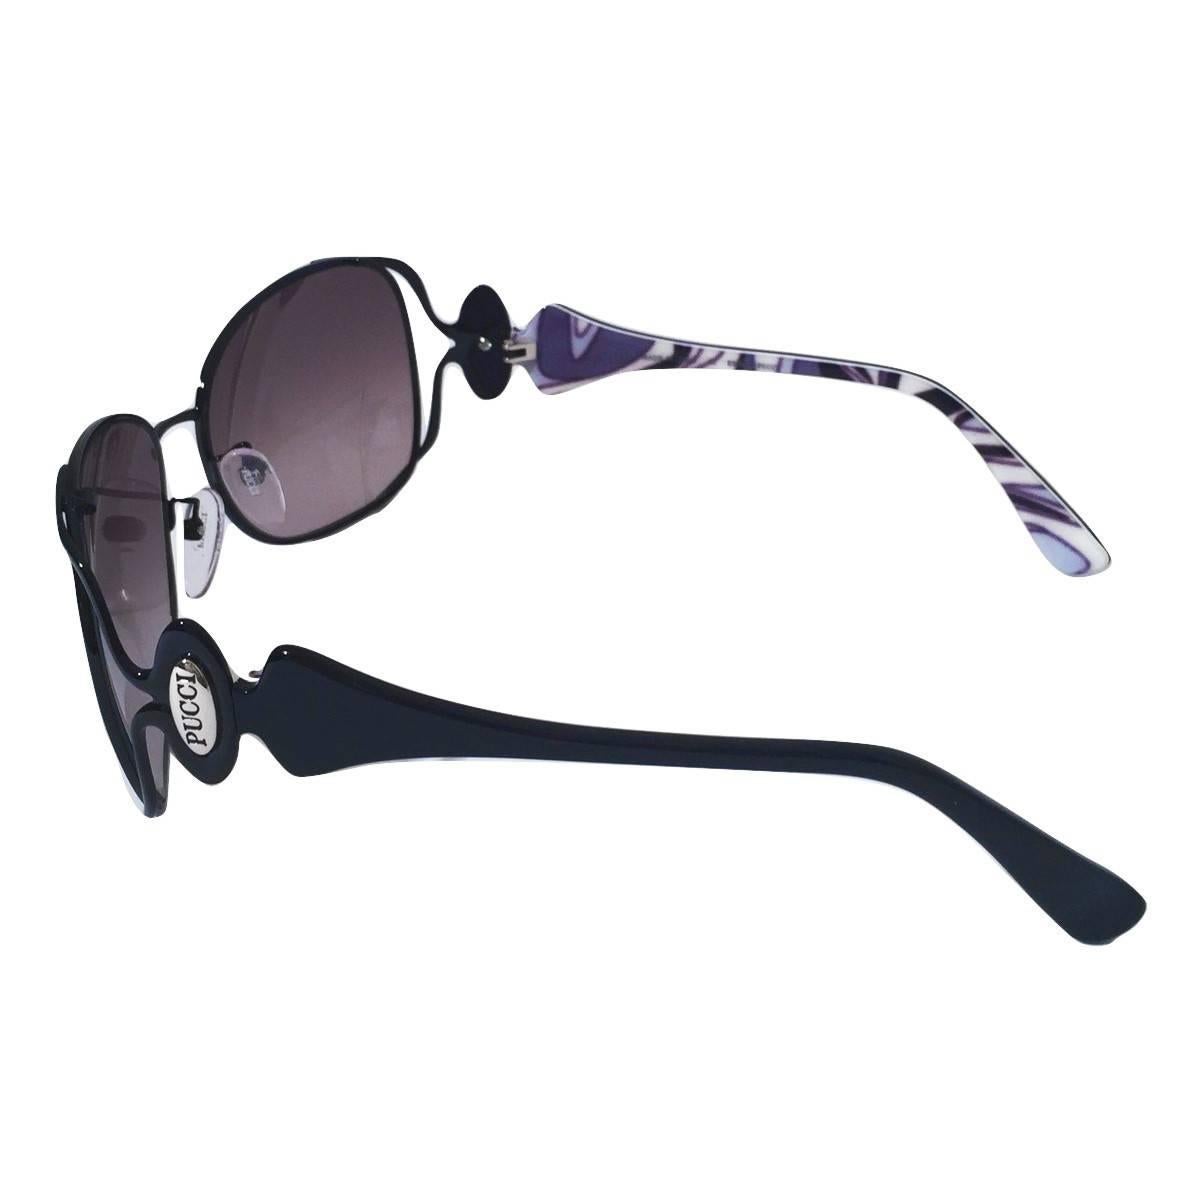 New Emilio Pucci Black Aviator Sunglasses With Case & Box 1